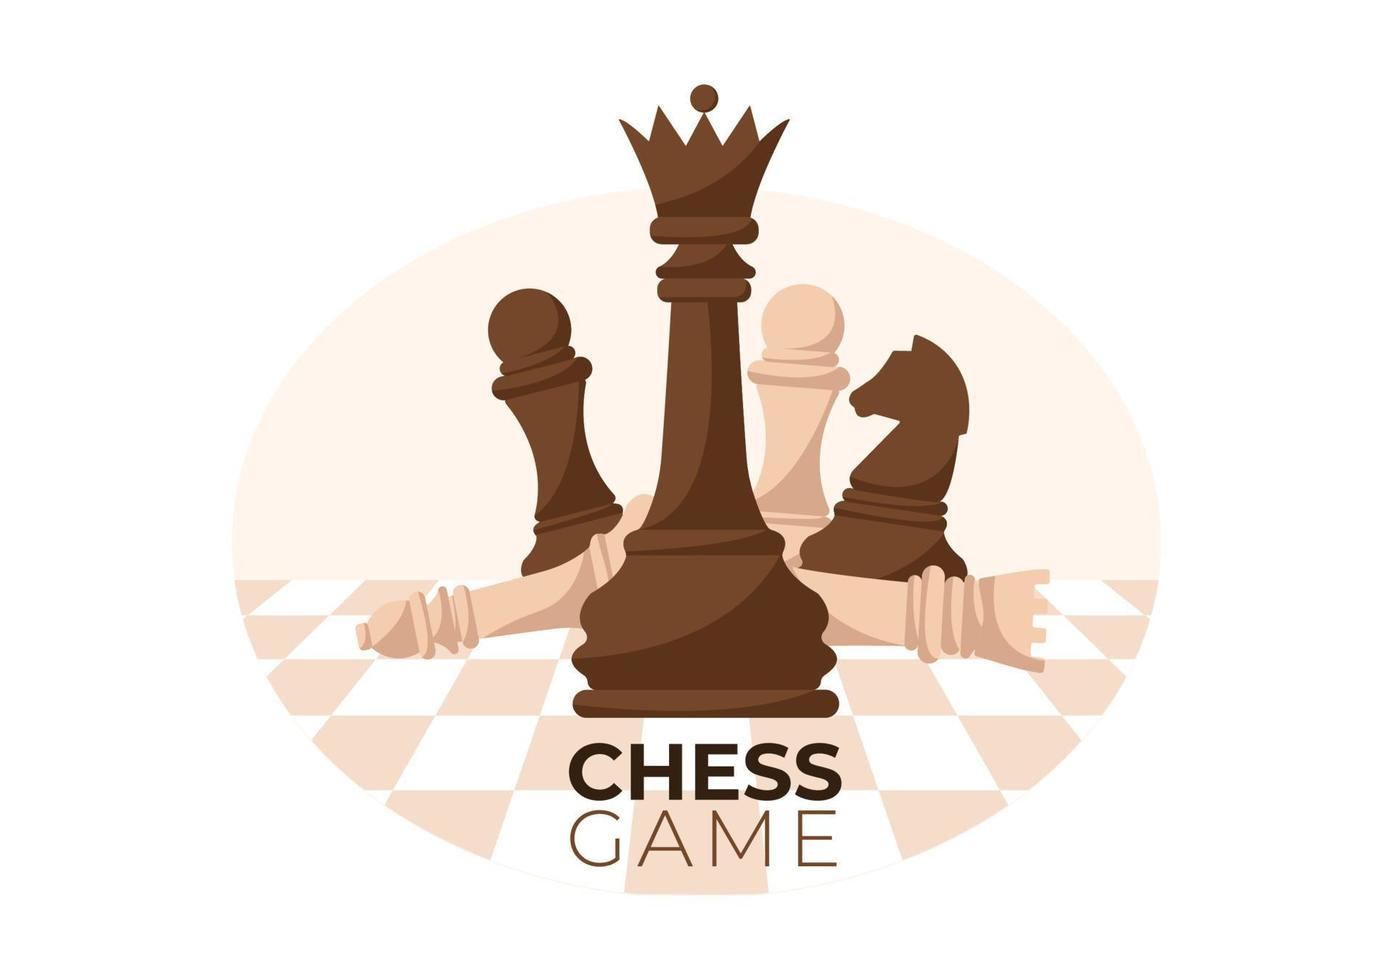 rutigt schackbräde tecknad bakgrundsillustration med svarta och vita pjäser för hobbyaktivitet, tävling eller turnering vektor